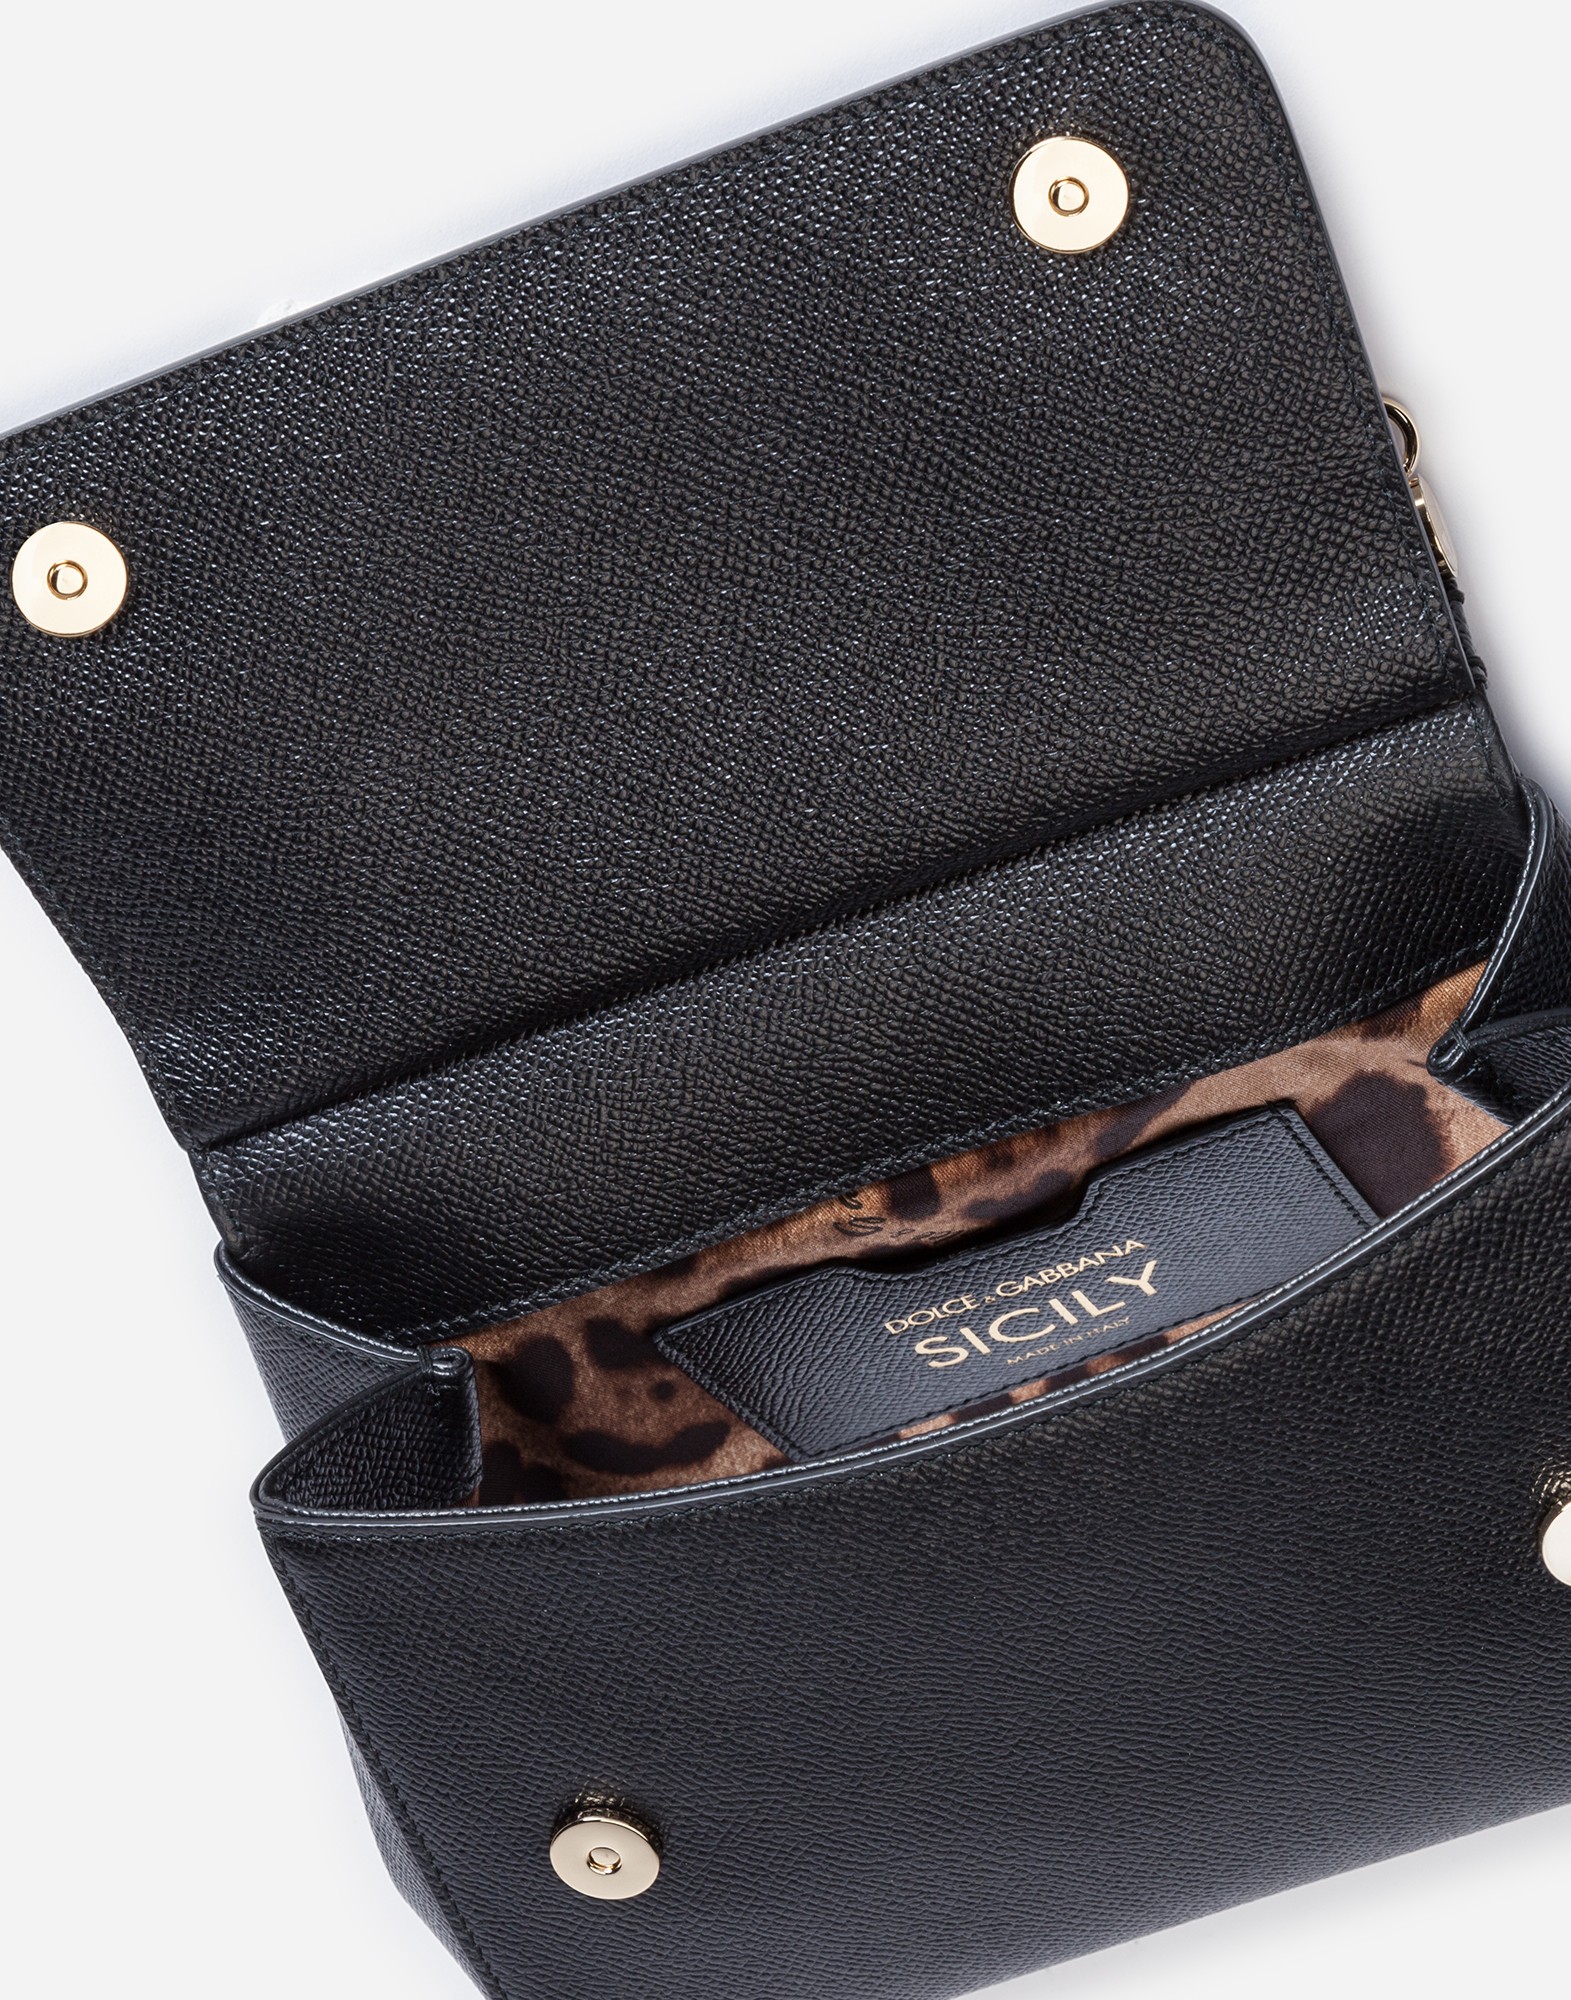 Dolce & Gabbana Sicily Small Leather Shoulder Bag Black